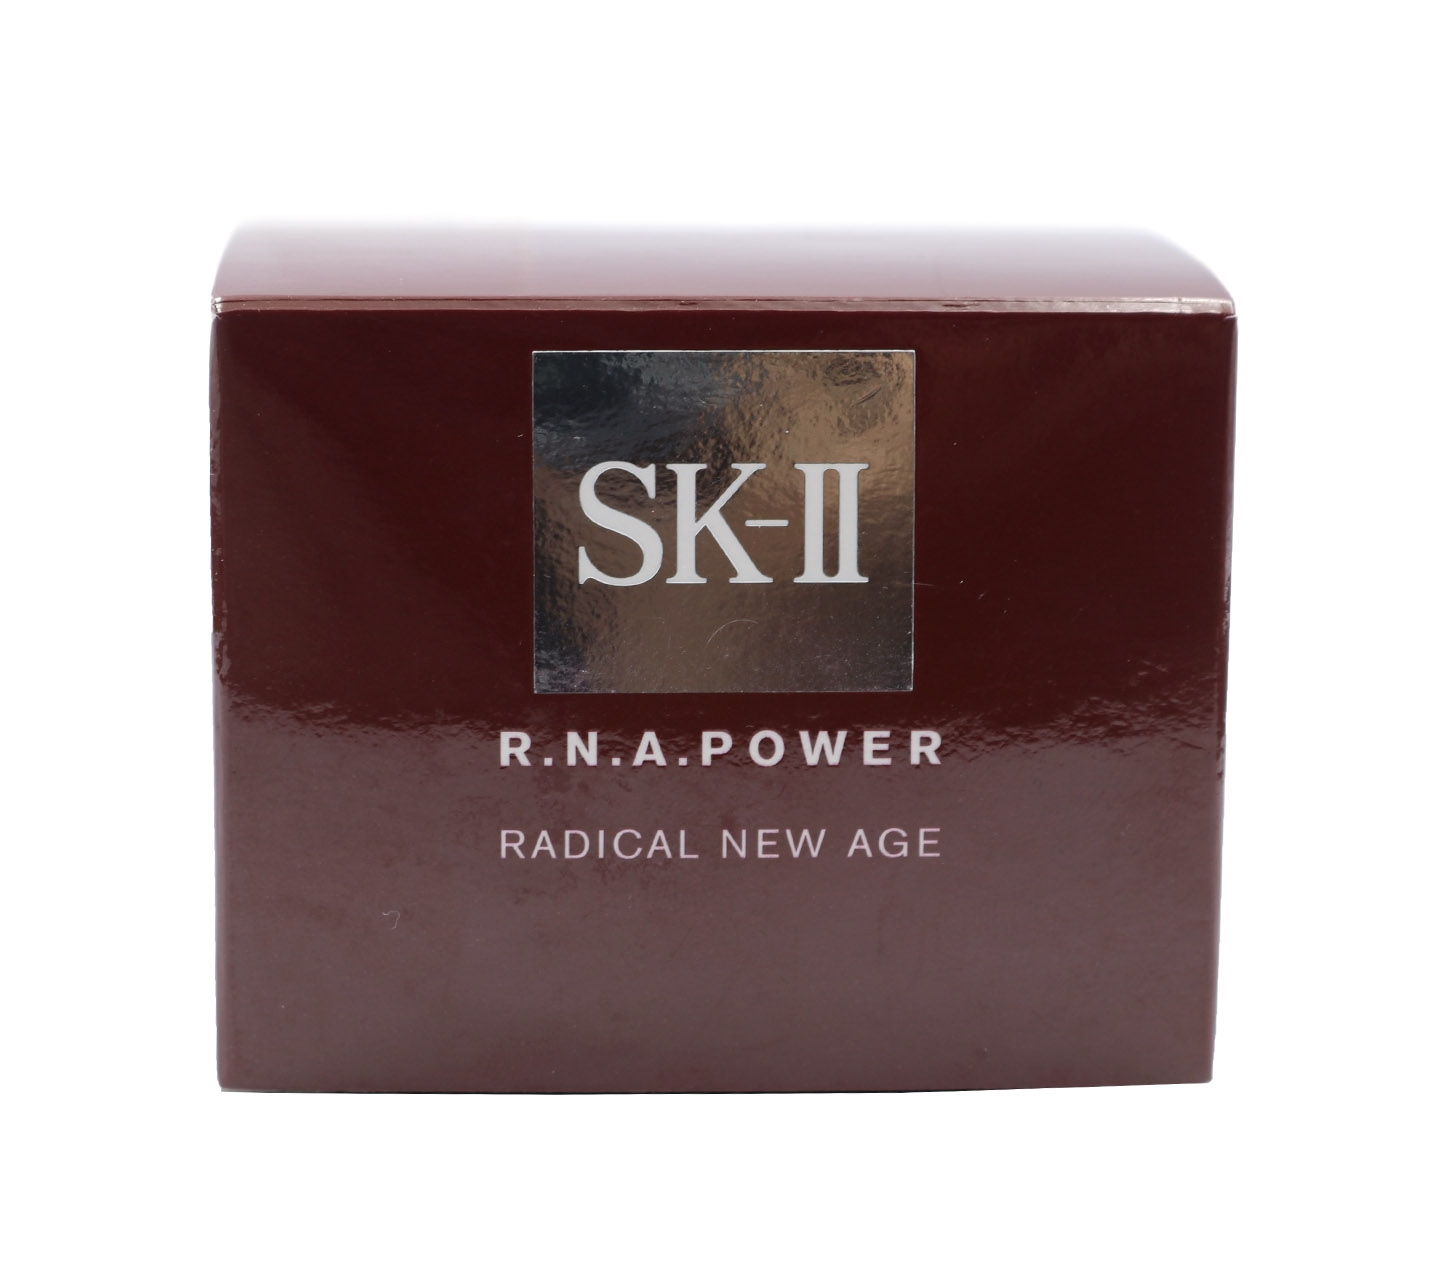 SK-II R.N.A Power Radical New Age Skin Care